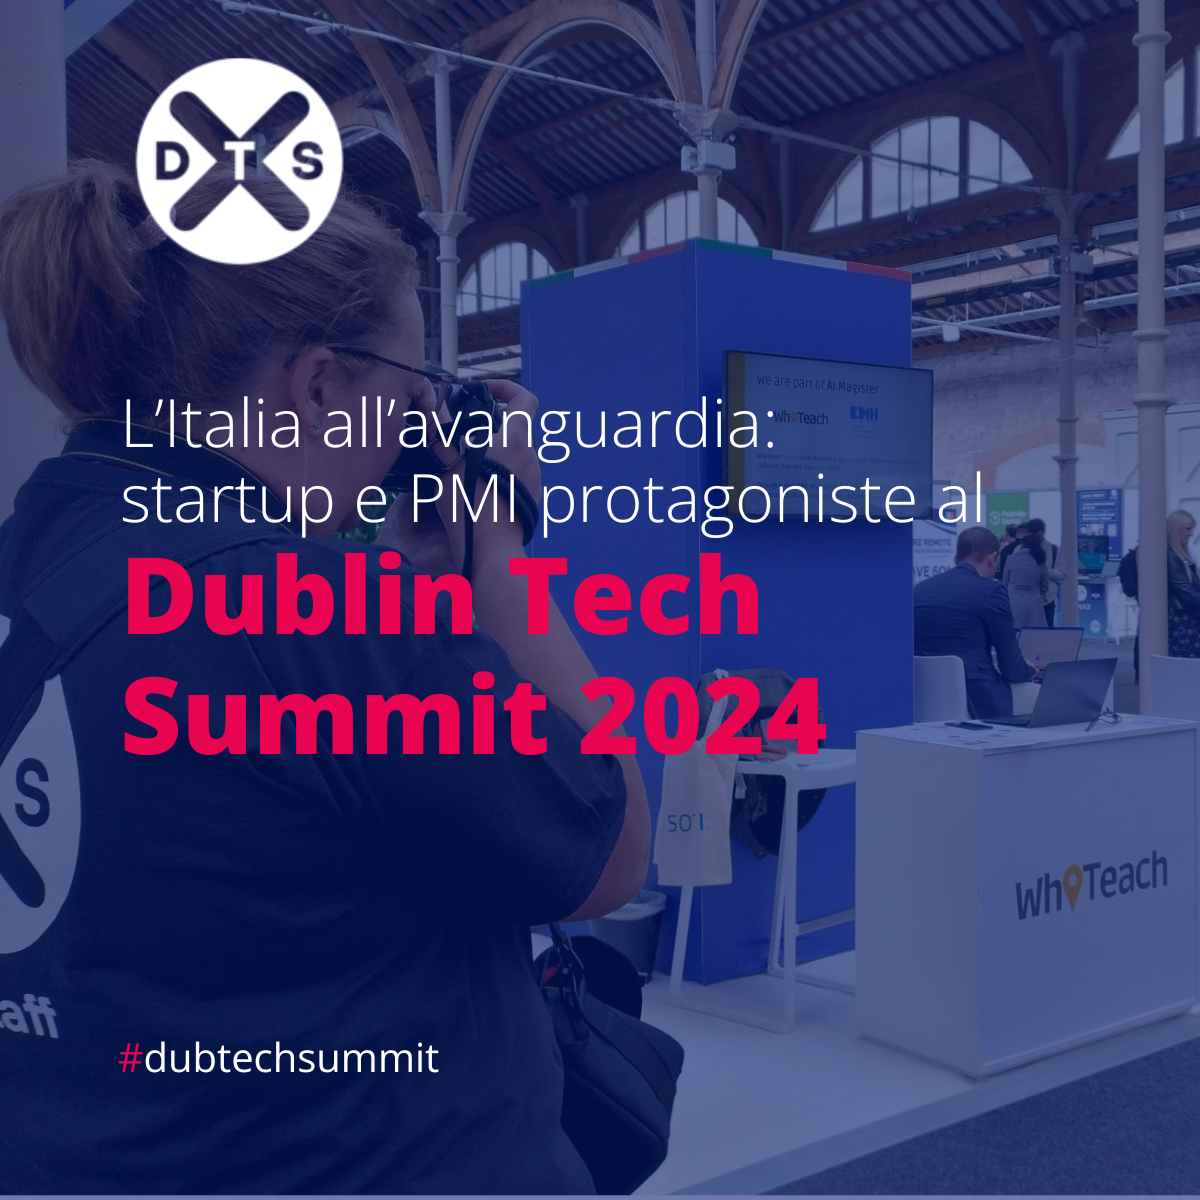 Italia all’avanguardia: startup e PMI protagoniste al Dublin Tech Summit 2024